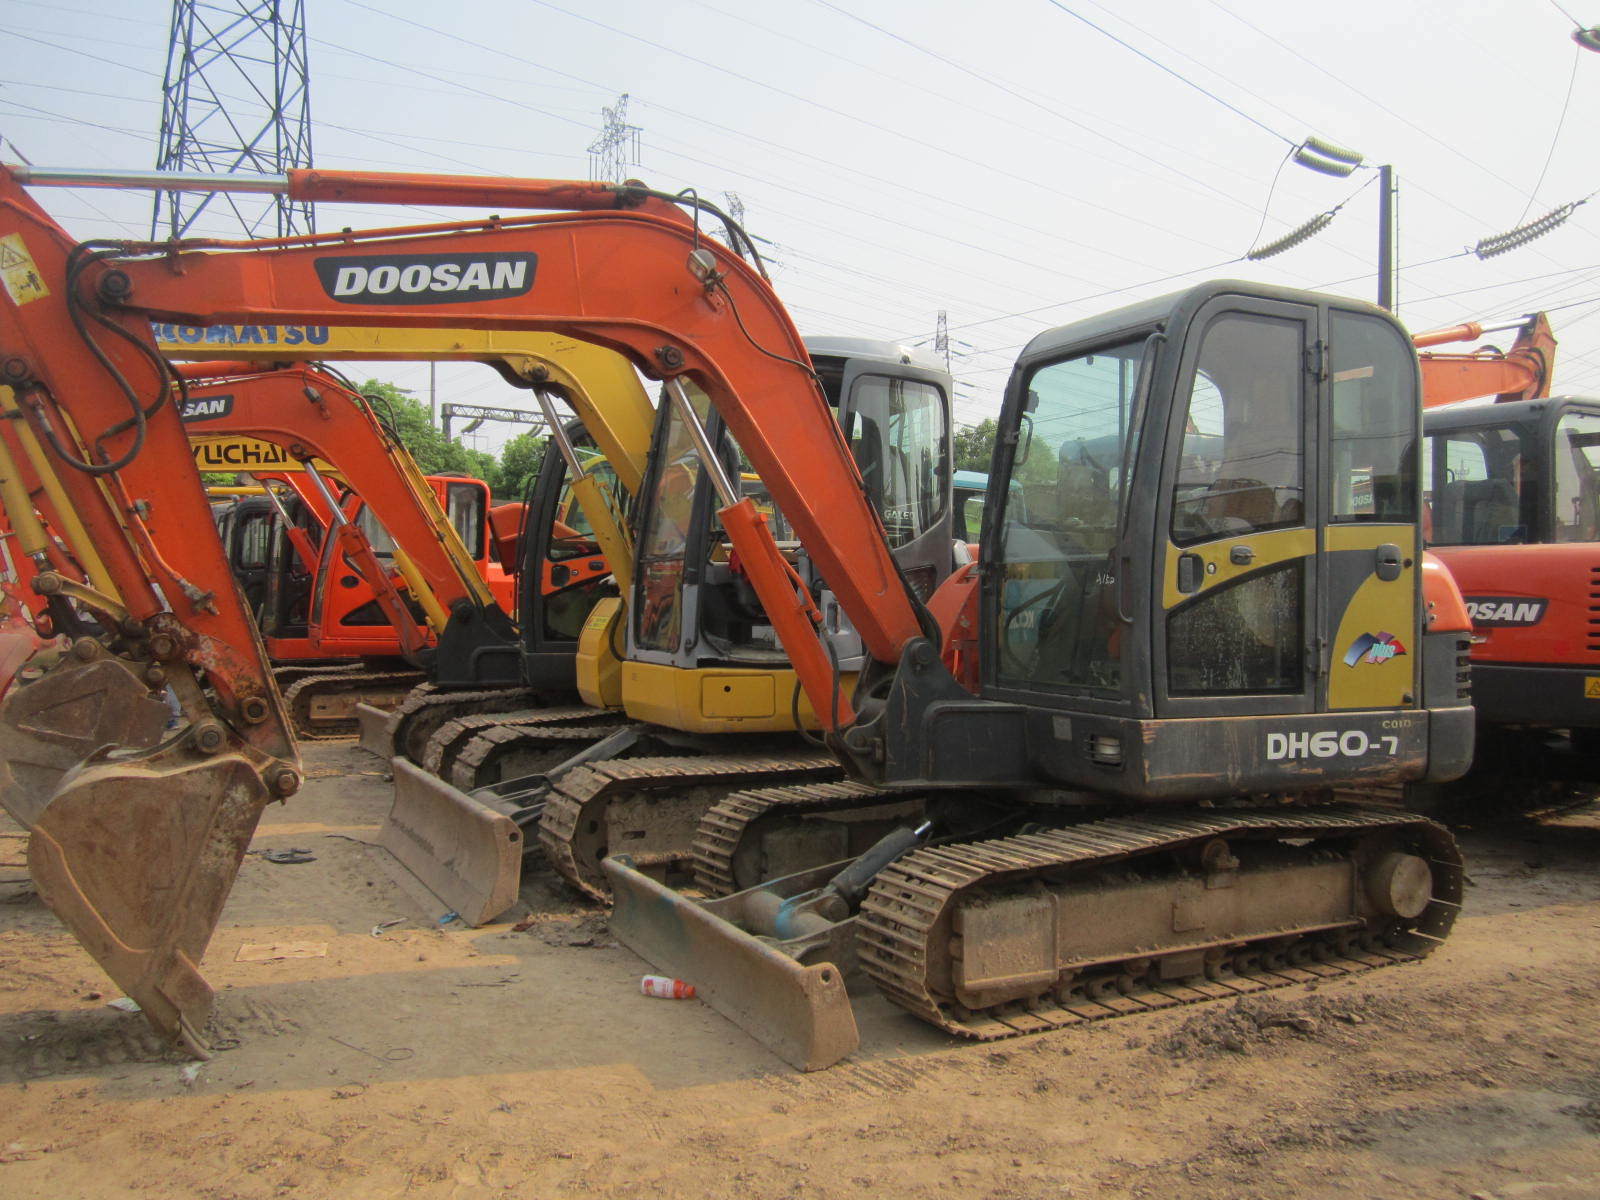 Used Doosan/ Daewoo Dh60-7 Excavator, Used Doosan Small Excavator